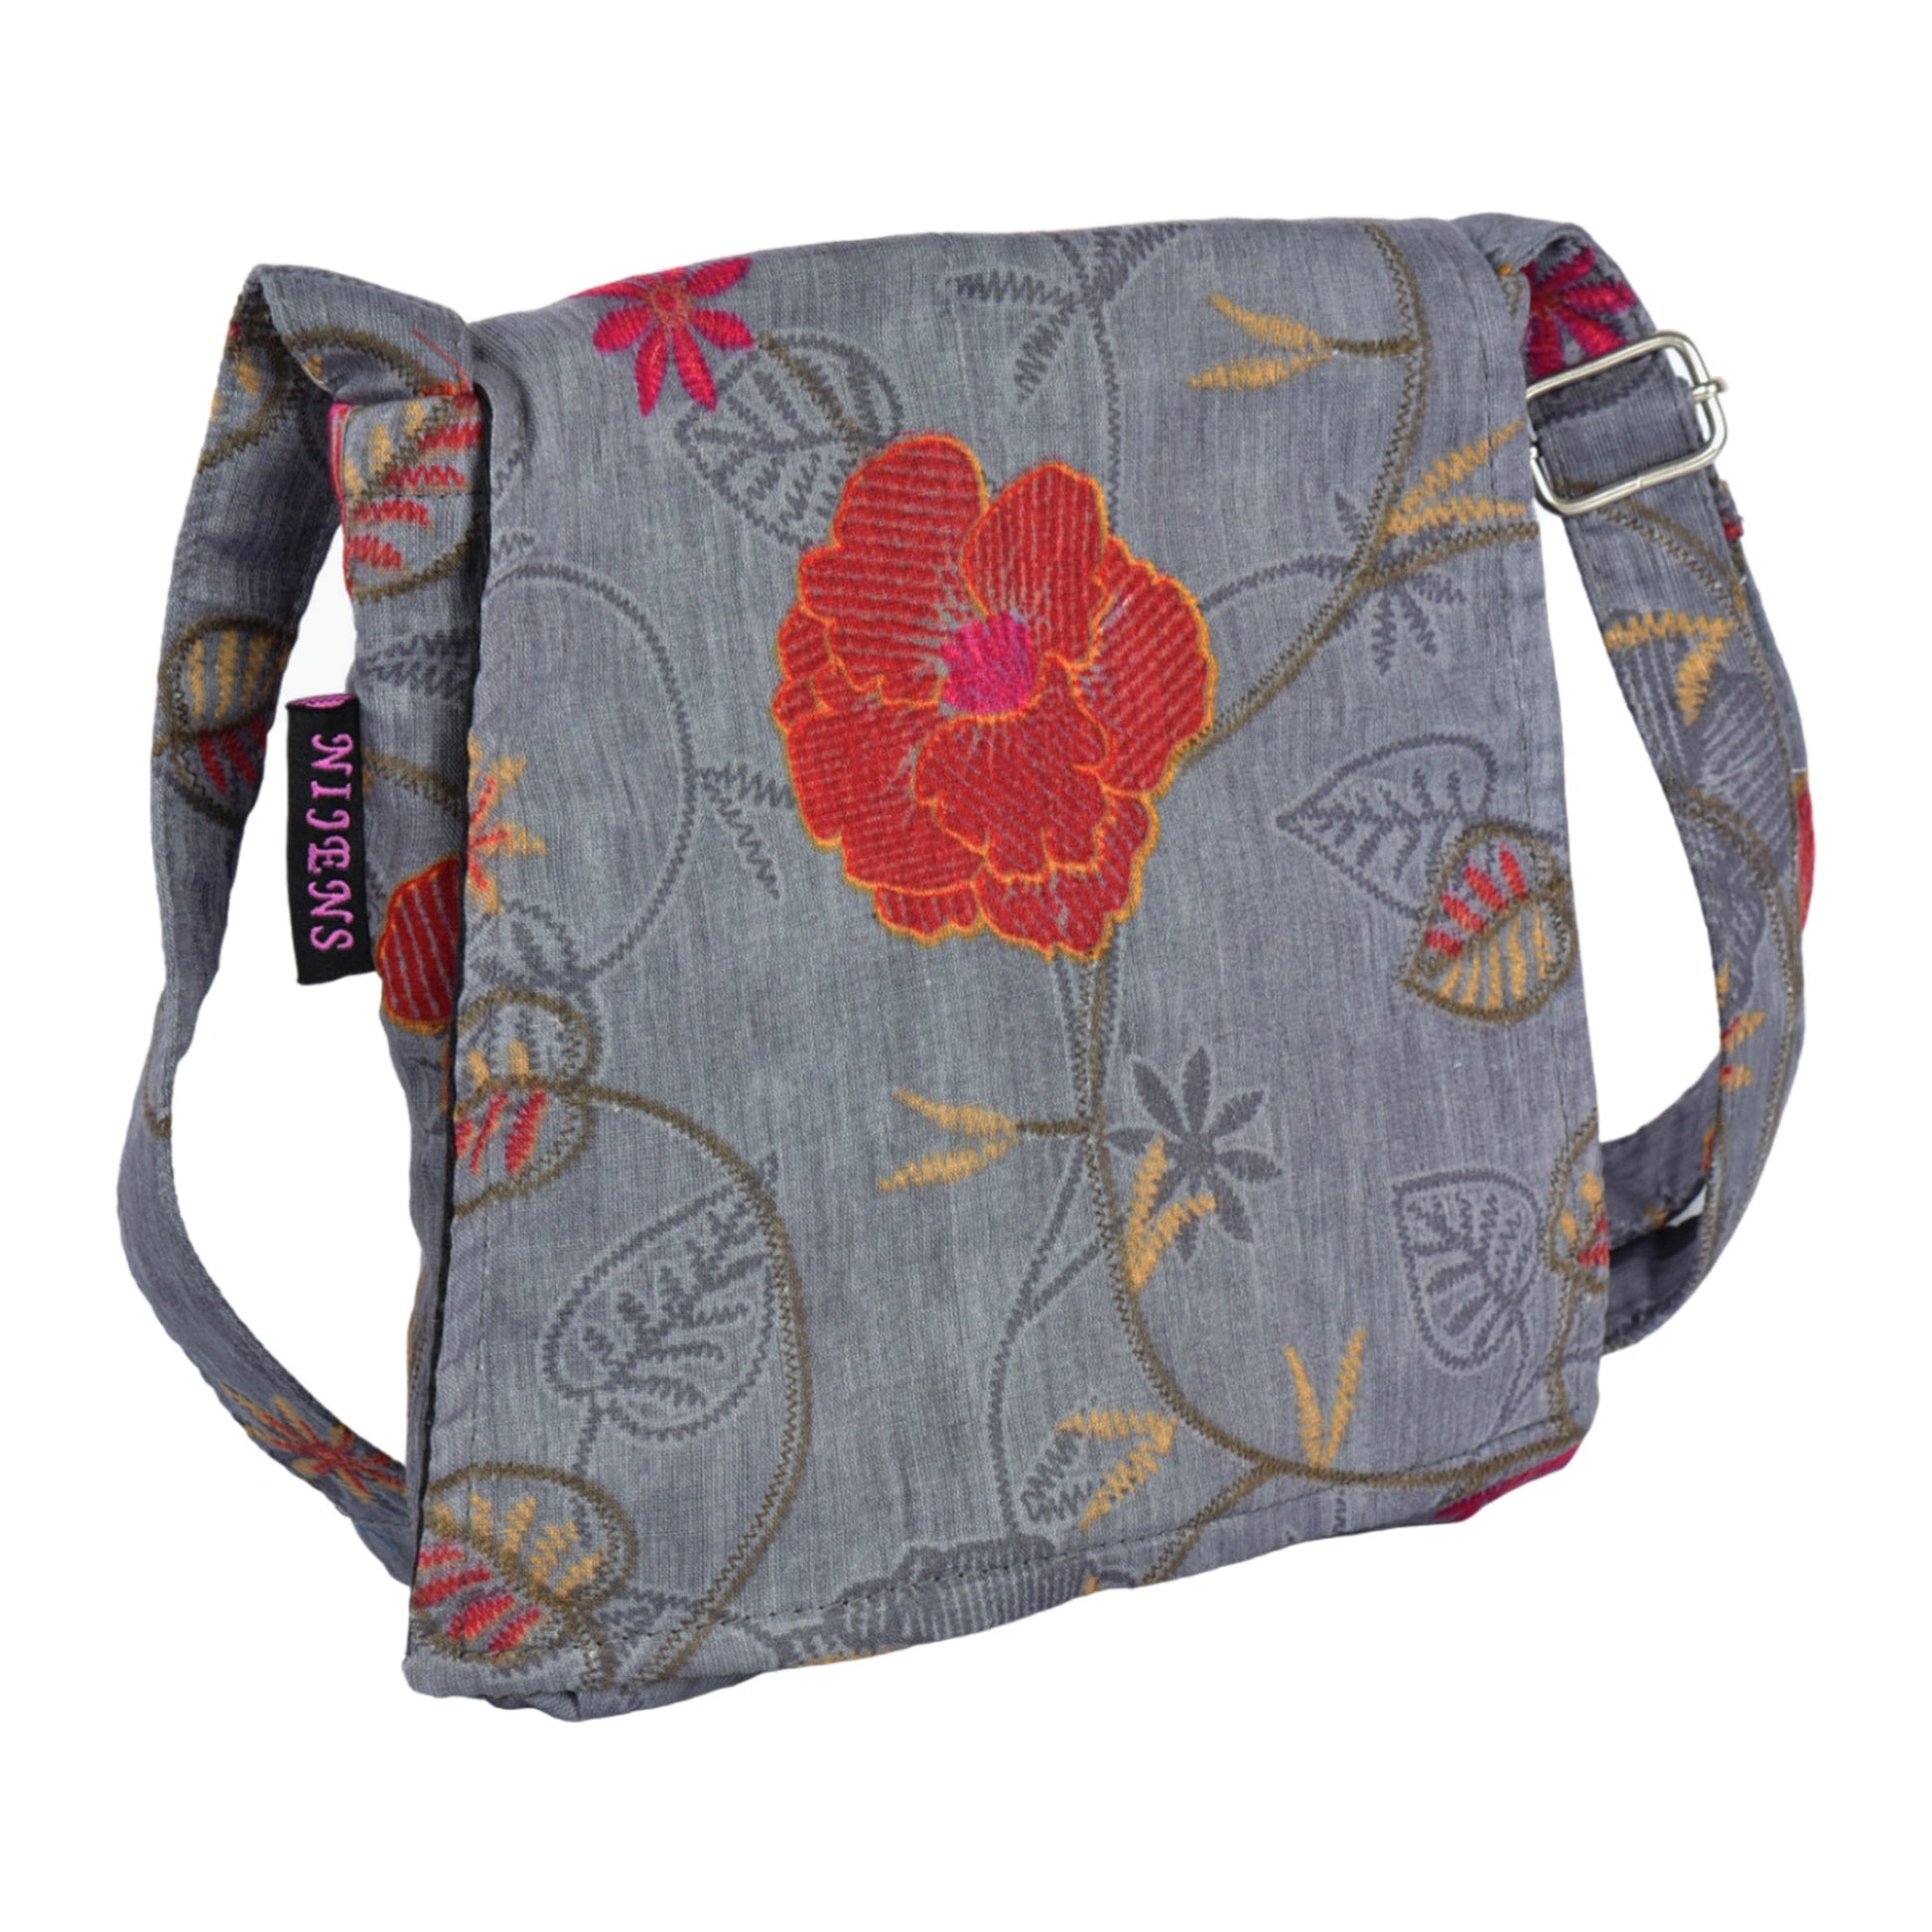 Kleine Tasche, Umhängetasche aus Baumwolle, Grau mit Blumen. Ein Hauptfach mit Einsteckfach und jeweils ein Reißverschlussfach vorne und hinten.